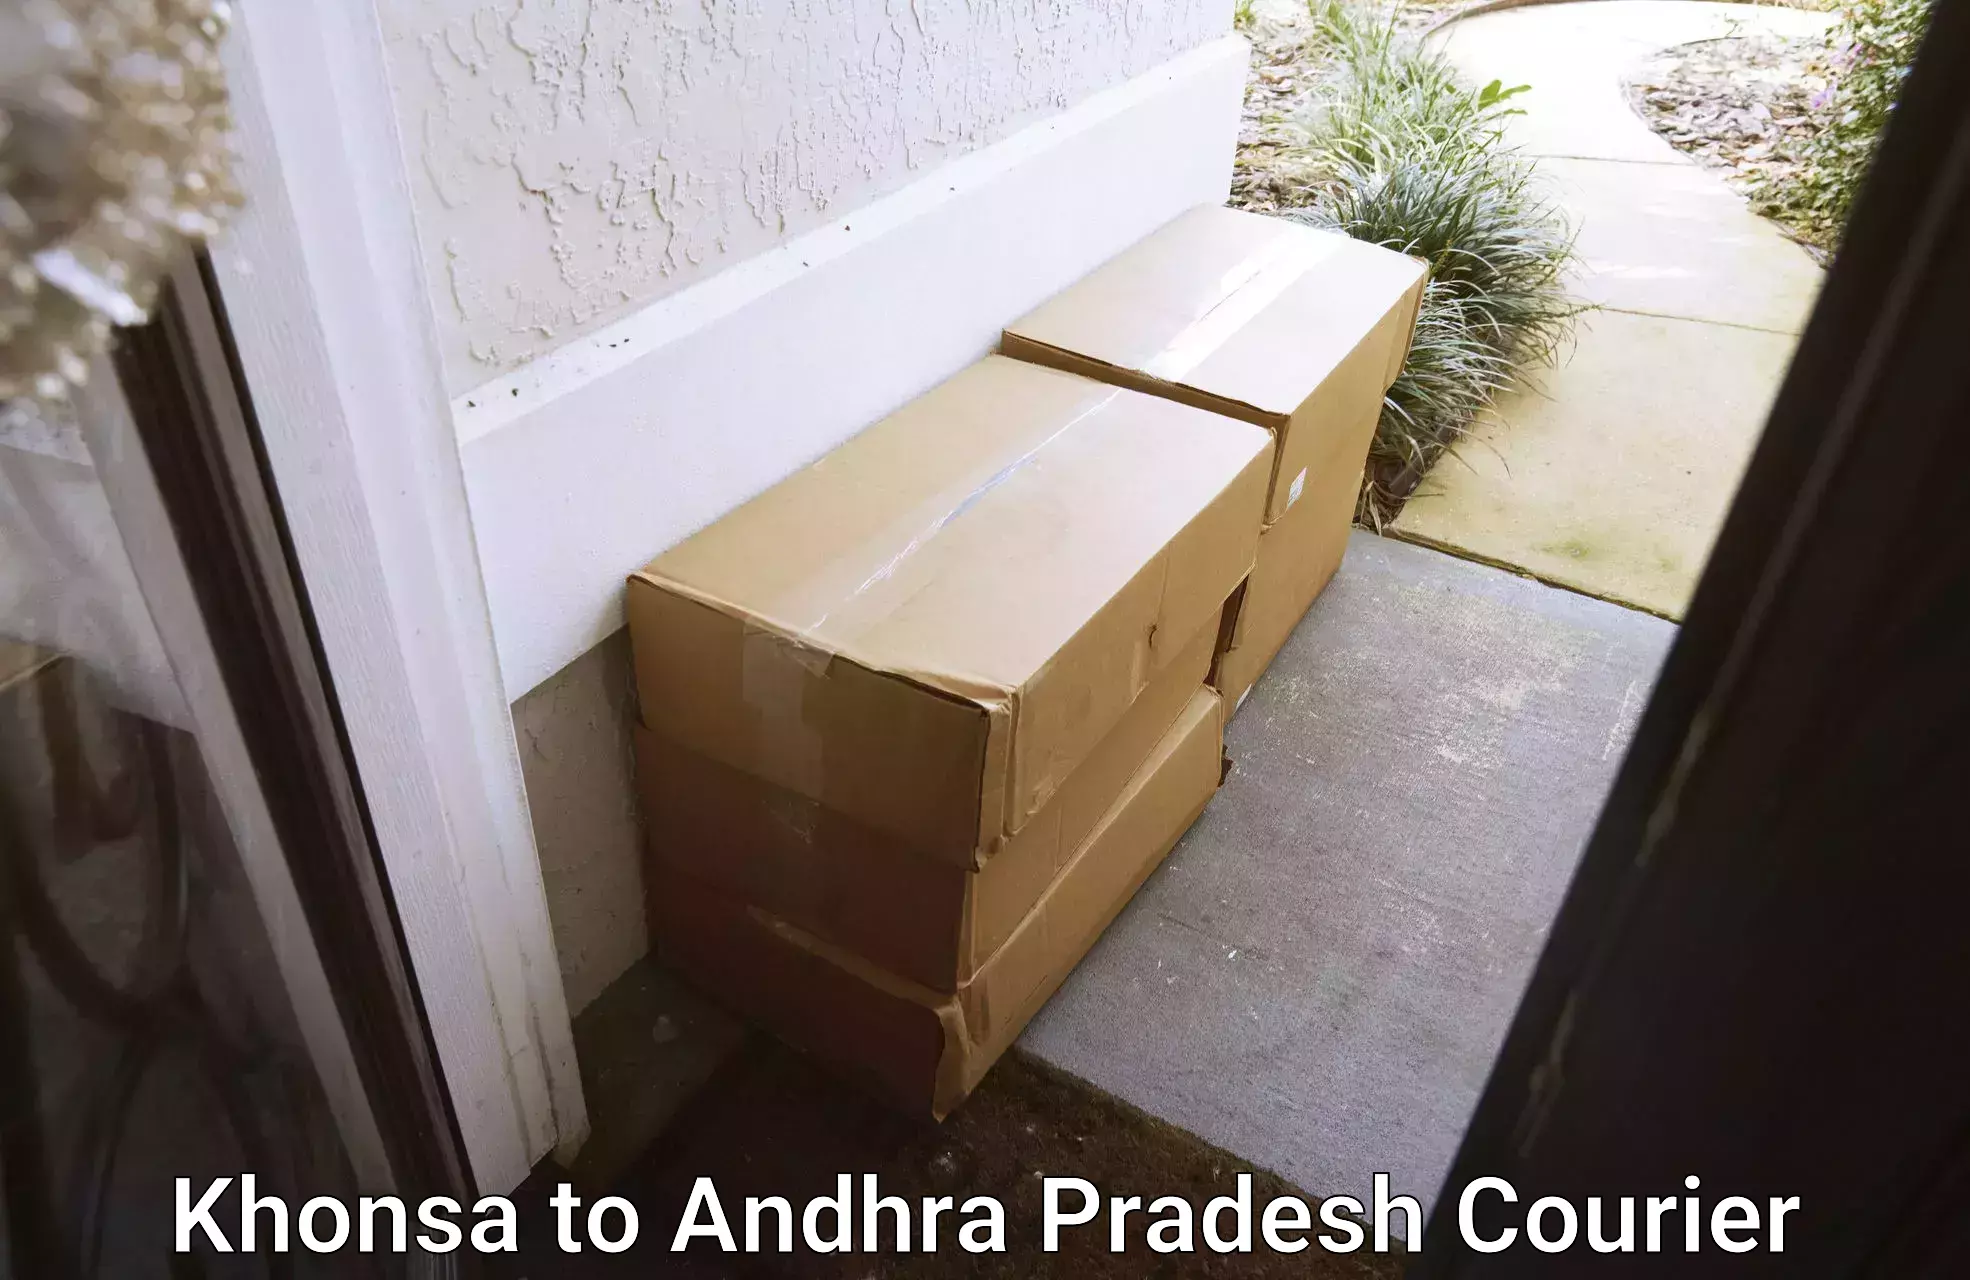 Global courier networks Khonsa to Annavaram